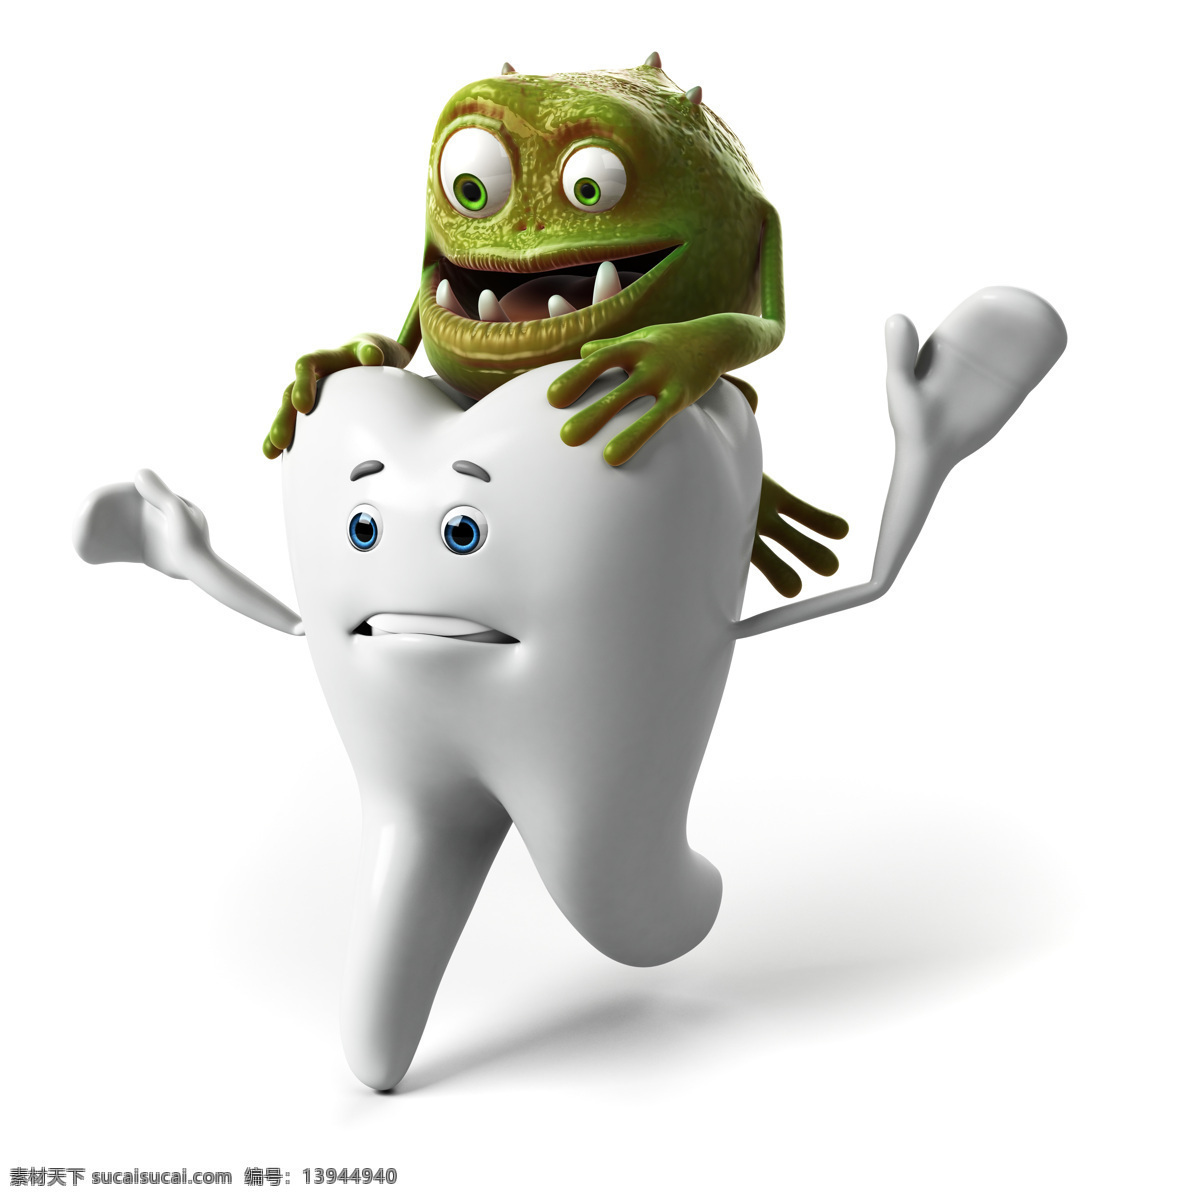 细菌 跑 牙齿 主题 牙齿素材 牙齿图片 病菌 卡通牙齿 牙齿保健 牙科 牙齿广告 医疗保健 医疗卫生 其他类别 生活百科